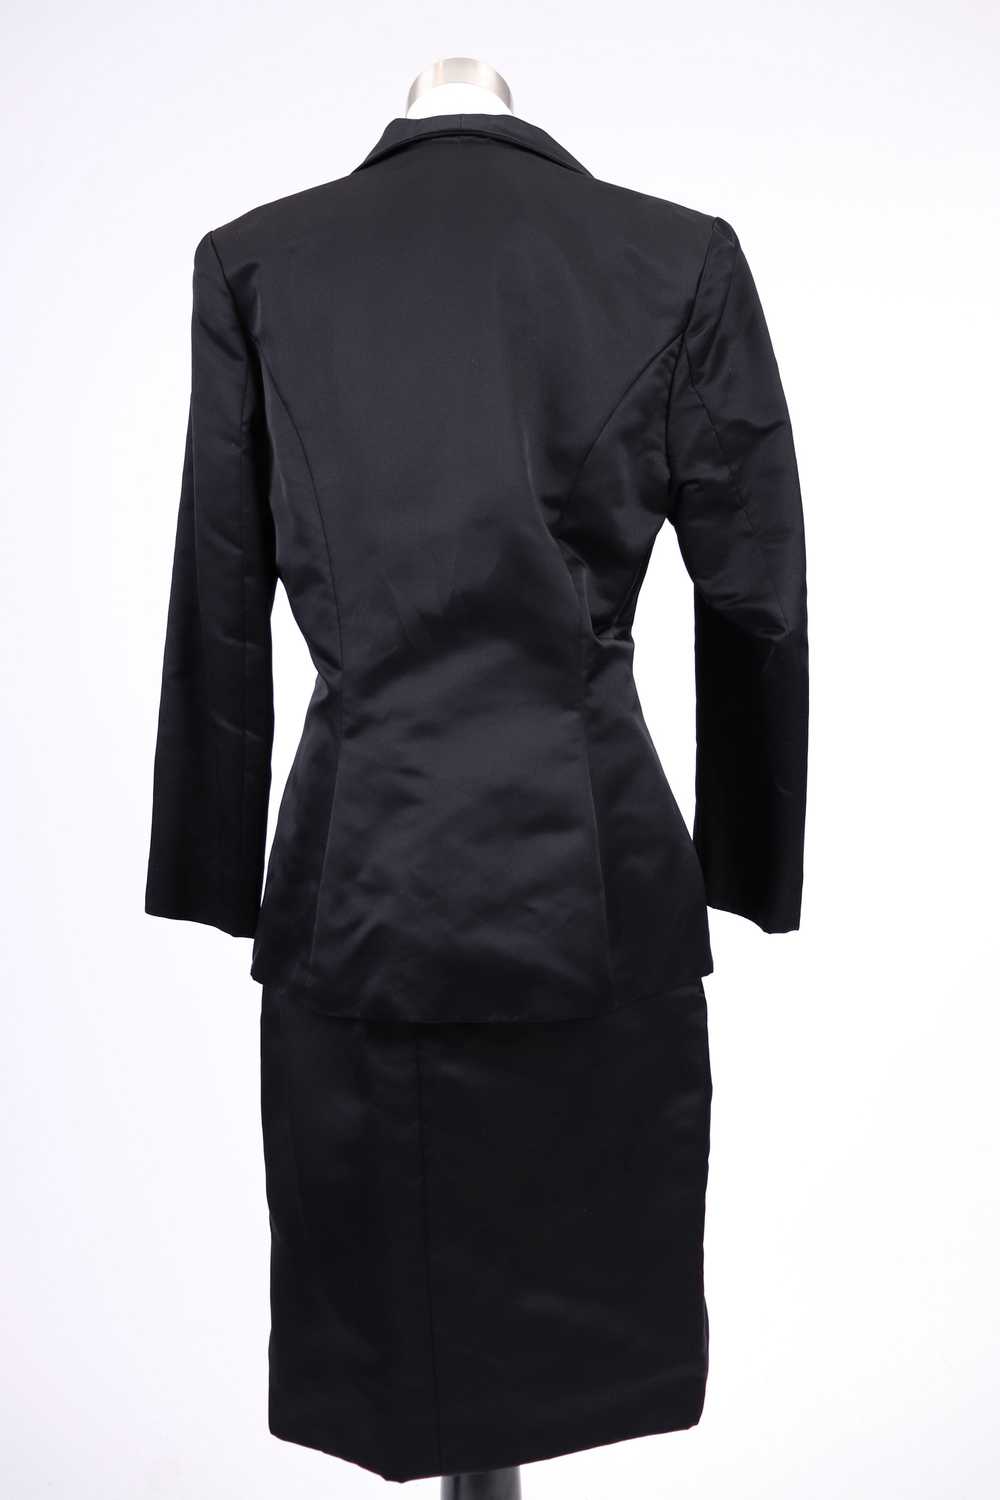 80's Bob Mackie Black Satin Skirt Suit M/L - image 6